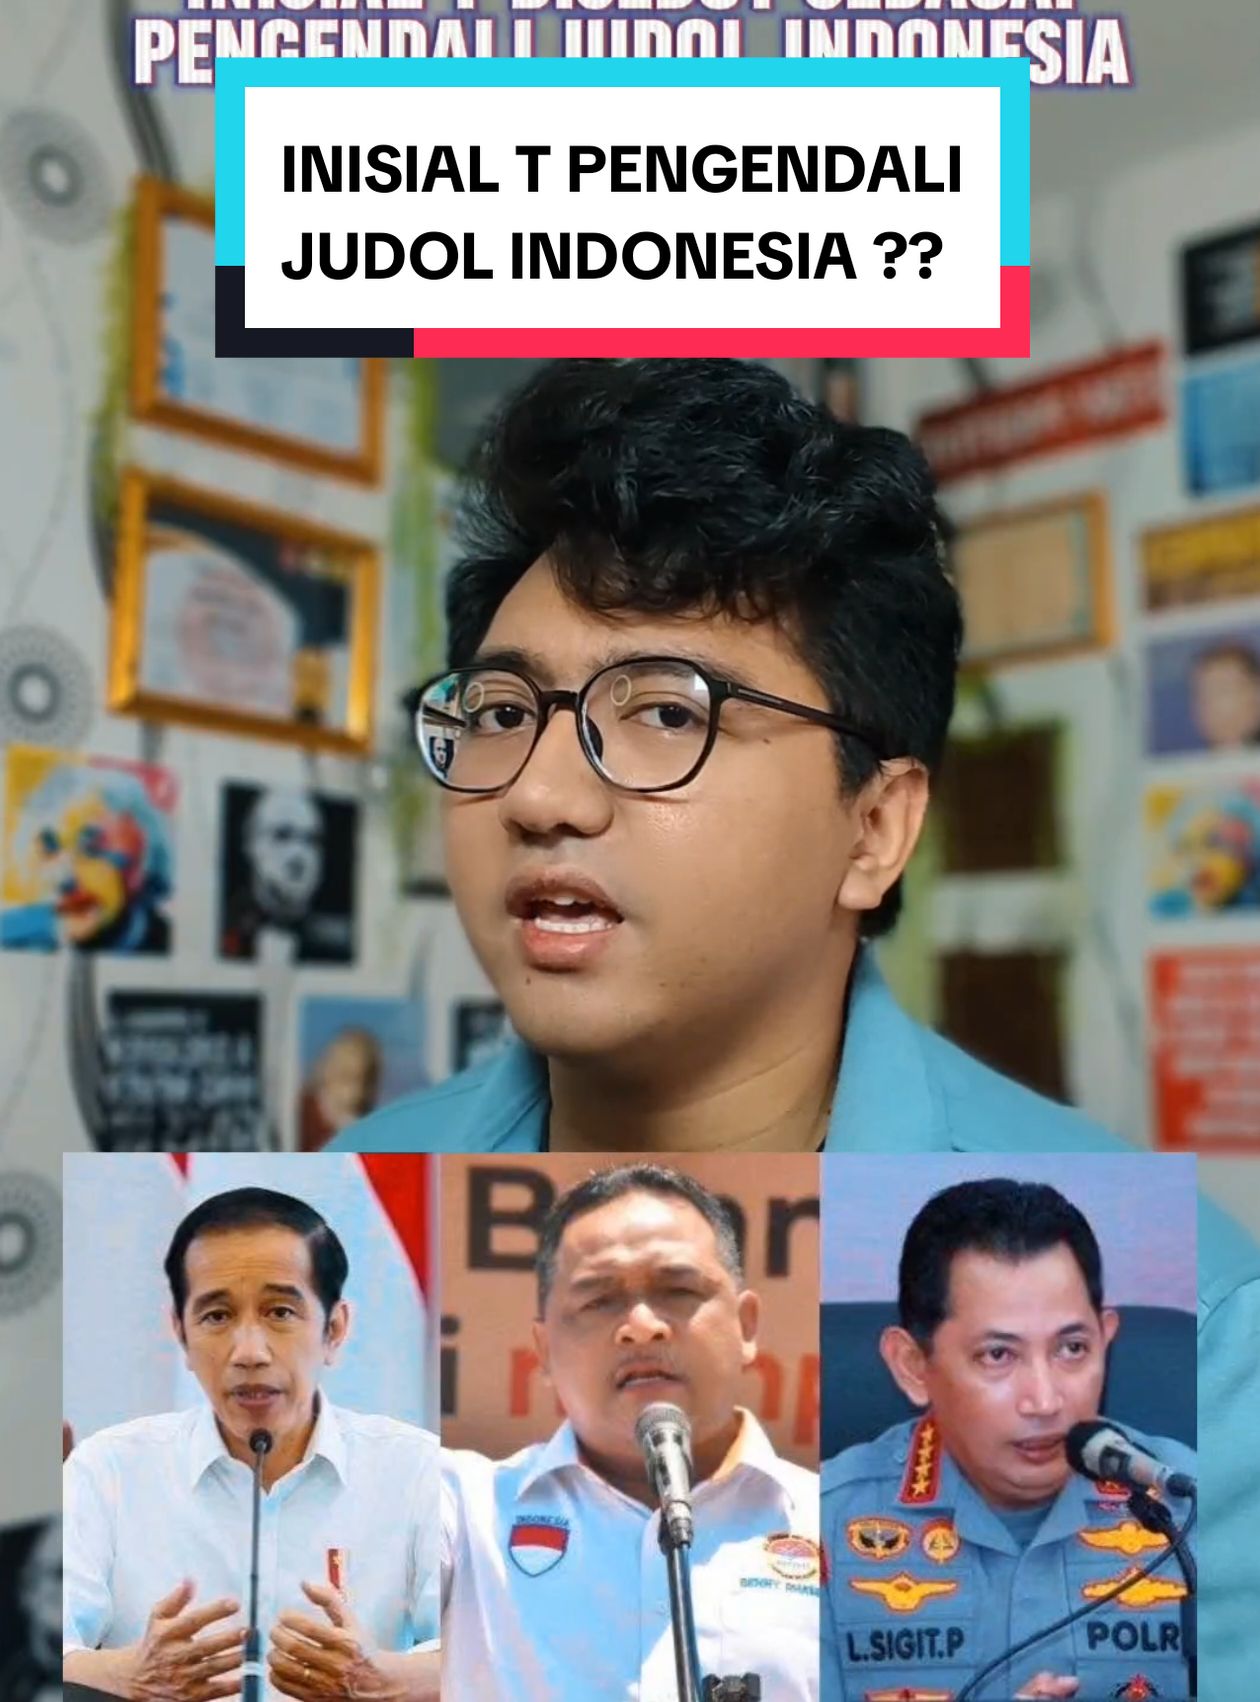 inisial T disebut sebagai pengendali judol Indonesia. begini tanggapan presiden Jokowi